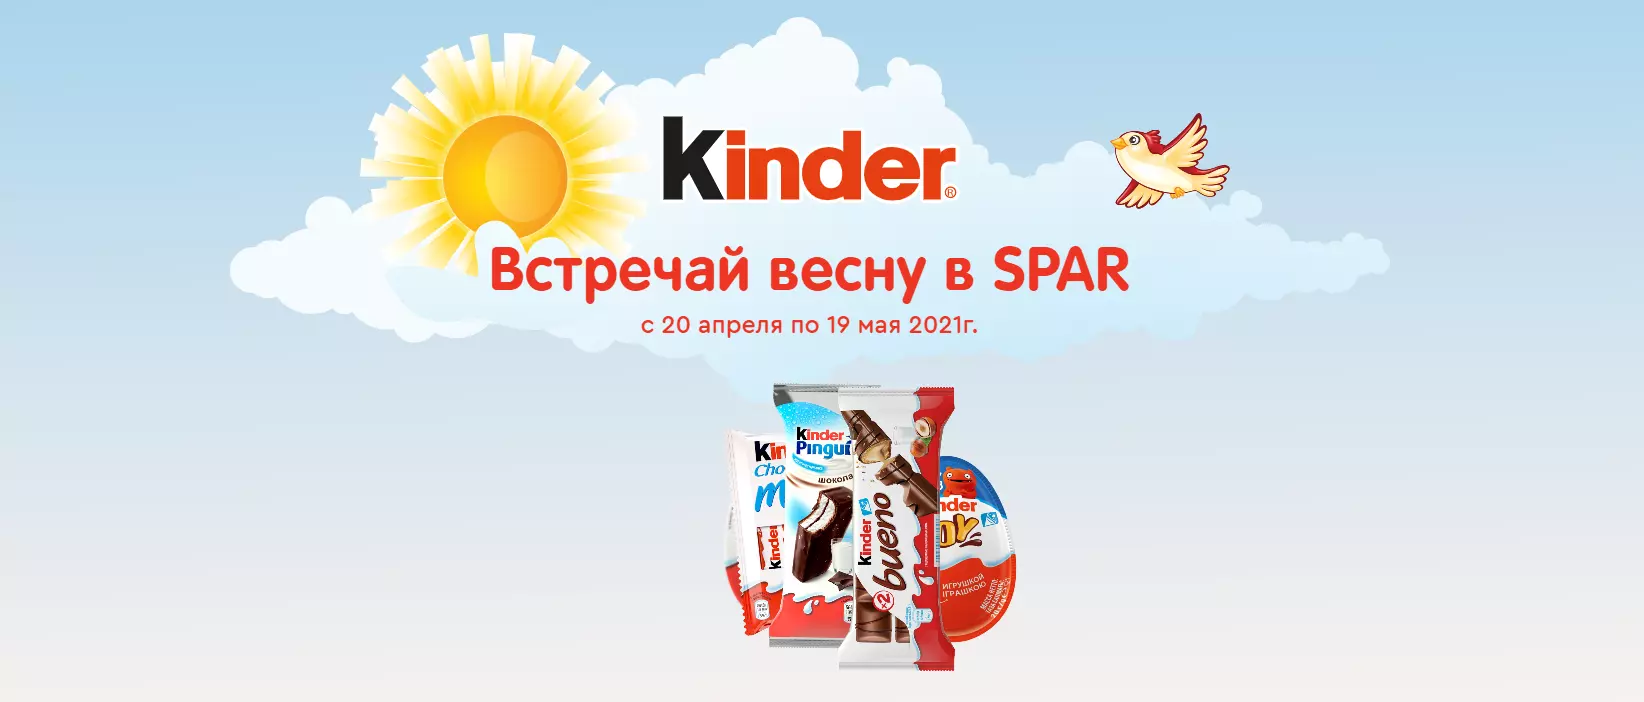 Акция Kinder Surprise и Spar: «Встречай весну в Spar!»